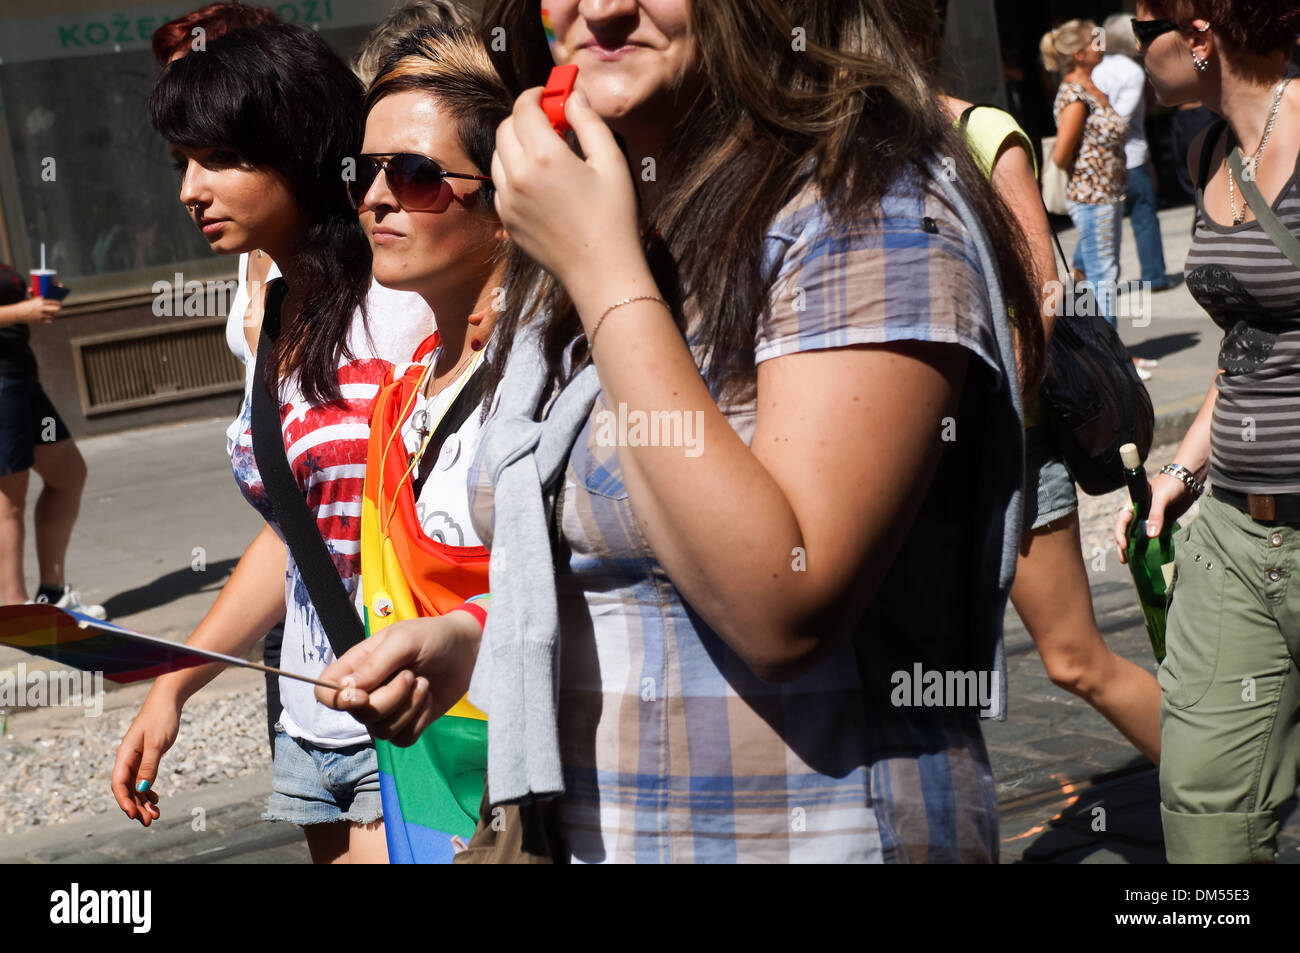 Les personnes homosexuelles et leurs amis et supporters assister à la parade de la fierté gay de Prague en 2012. Banque D'Images